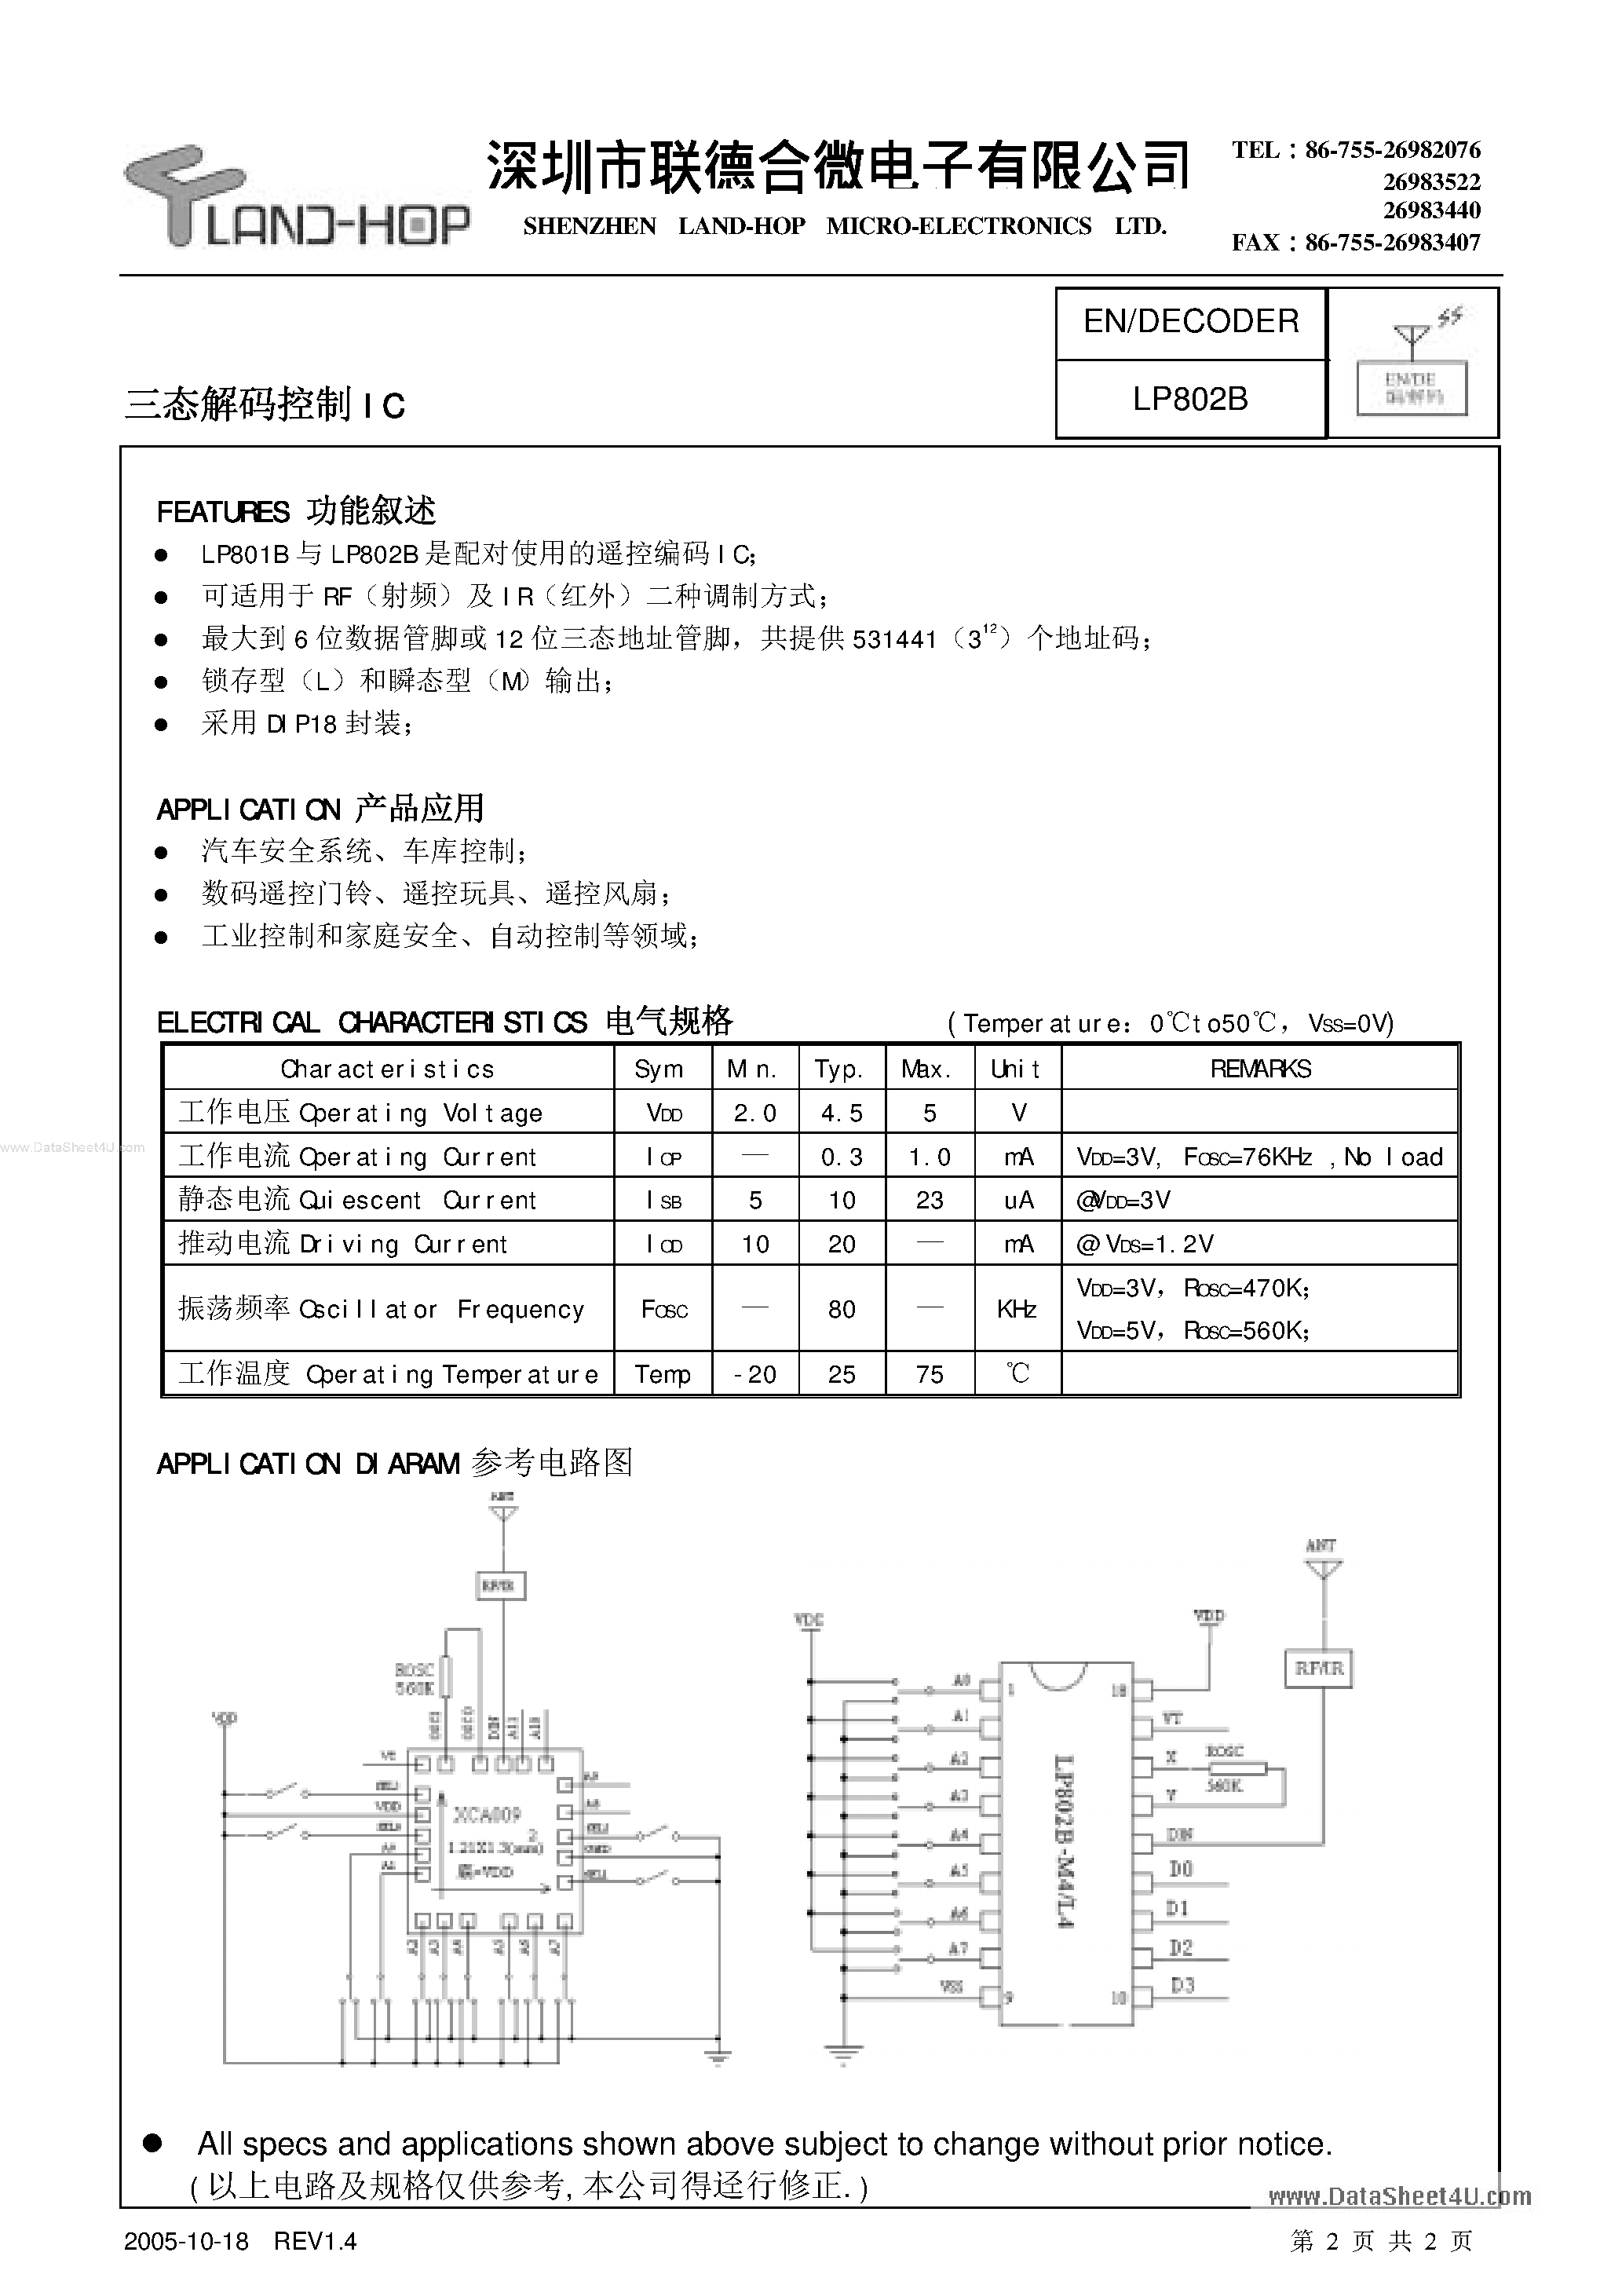 Datasheet LP801B - Encoder / Decoder page 2